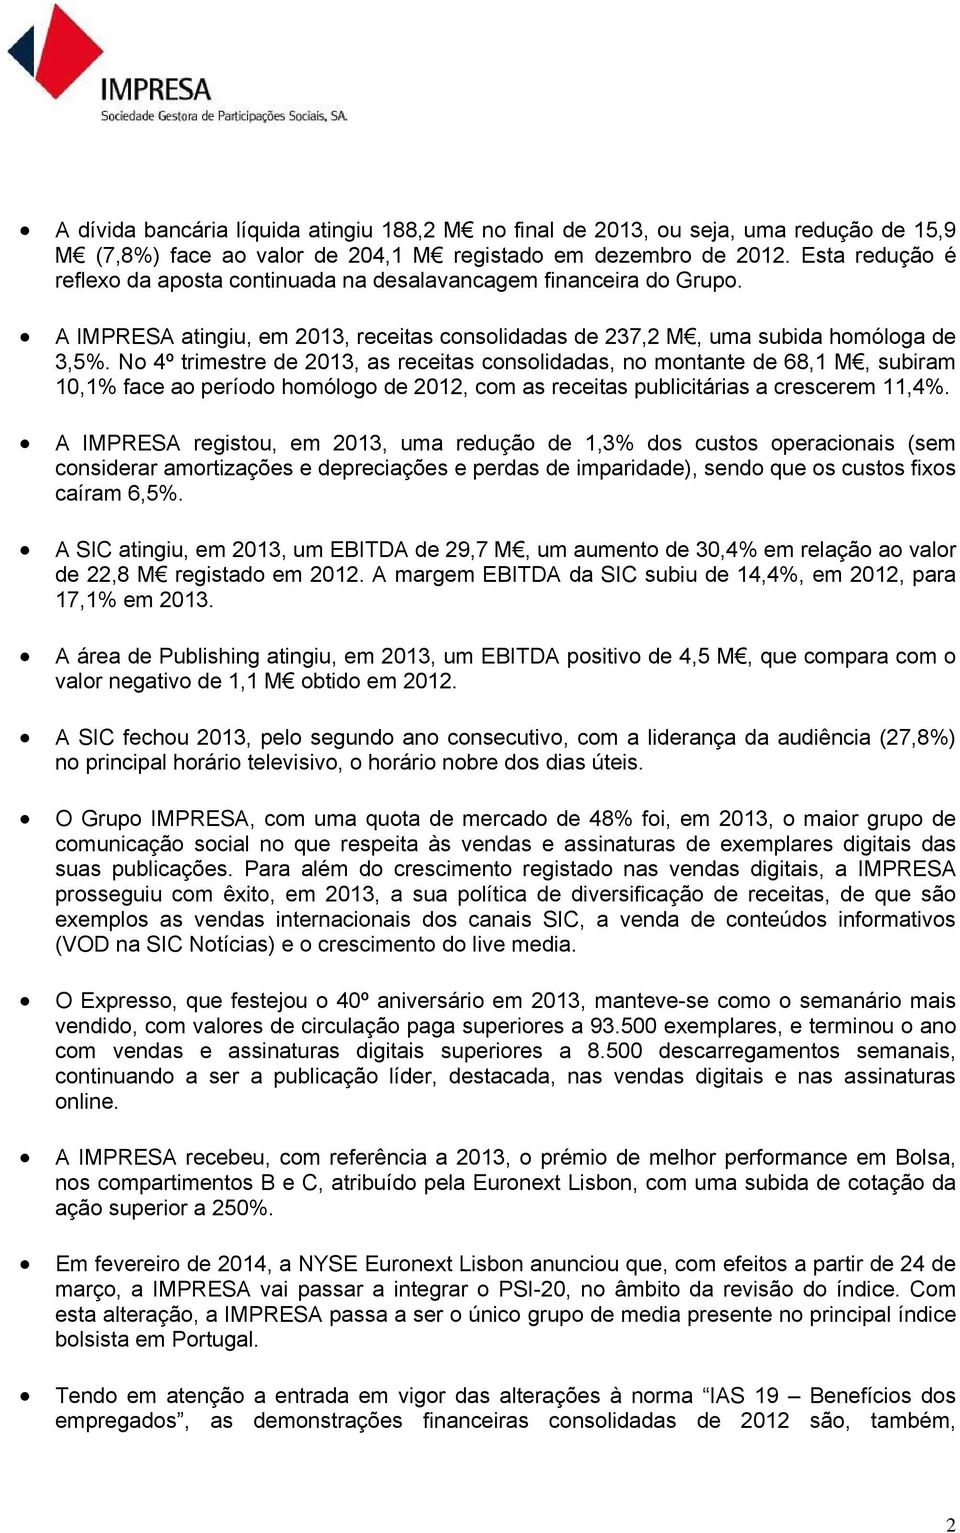 No 4º trimestre de 2013, as receitas consolidadas, no montante de 68,1 M, subiram 10,1% face ao período homólogo de 2012, com as receitas publicitárias a crescerem 11,4%.